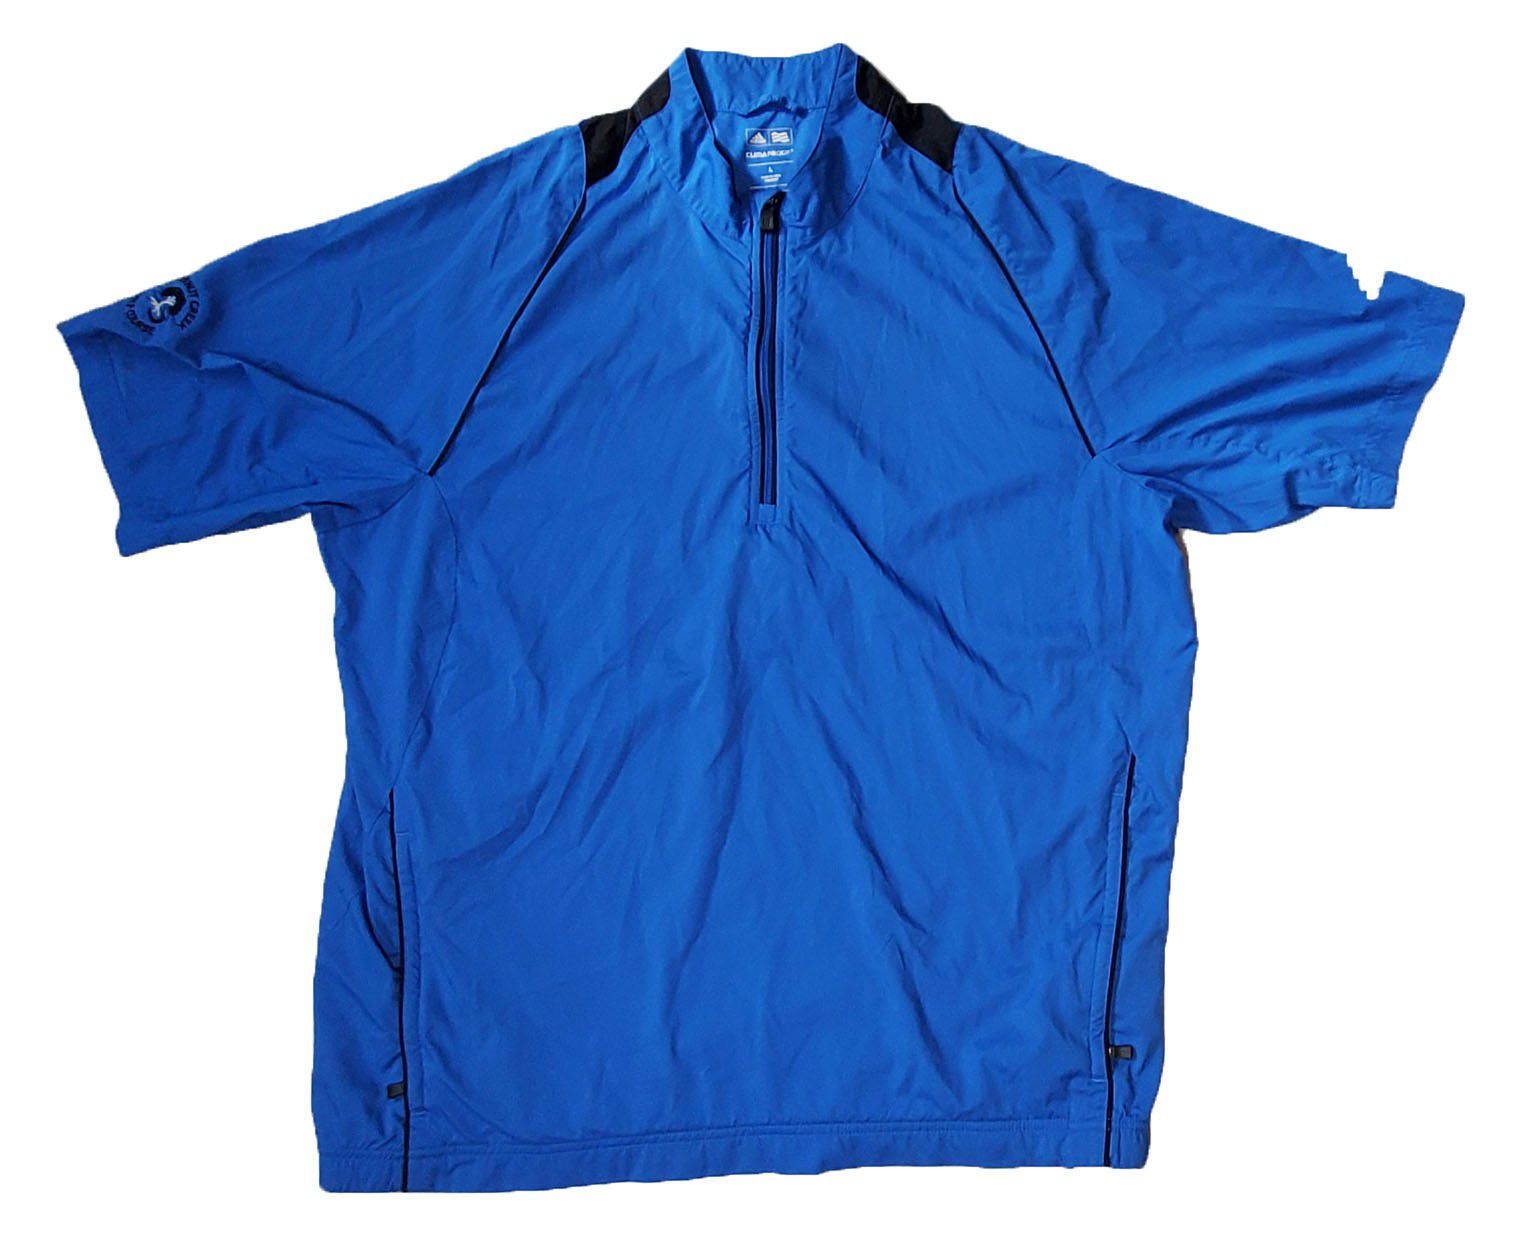 Adidas Climaproof Men's Rain Jacket Size Large